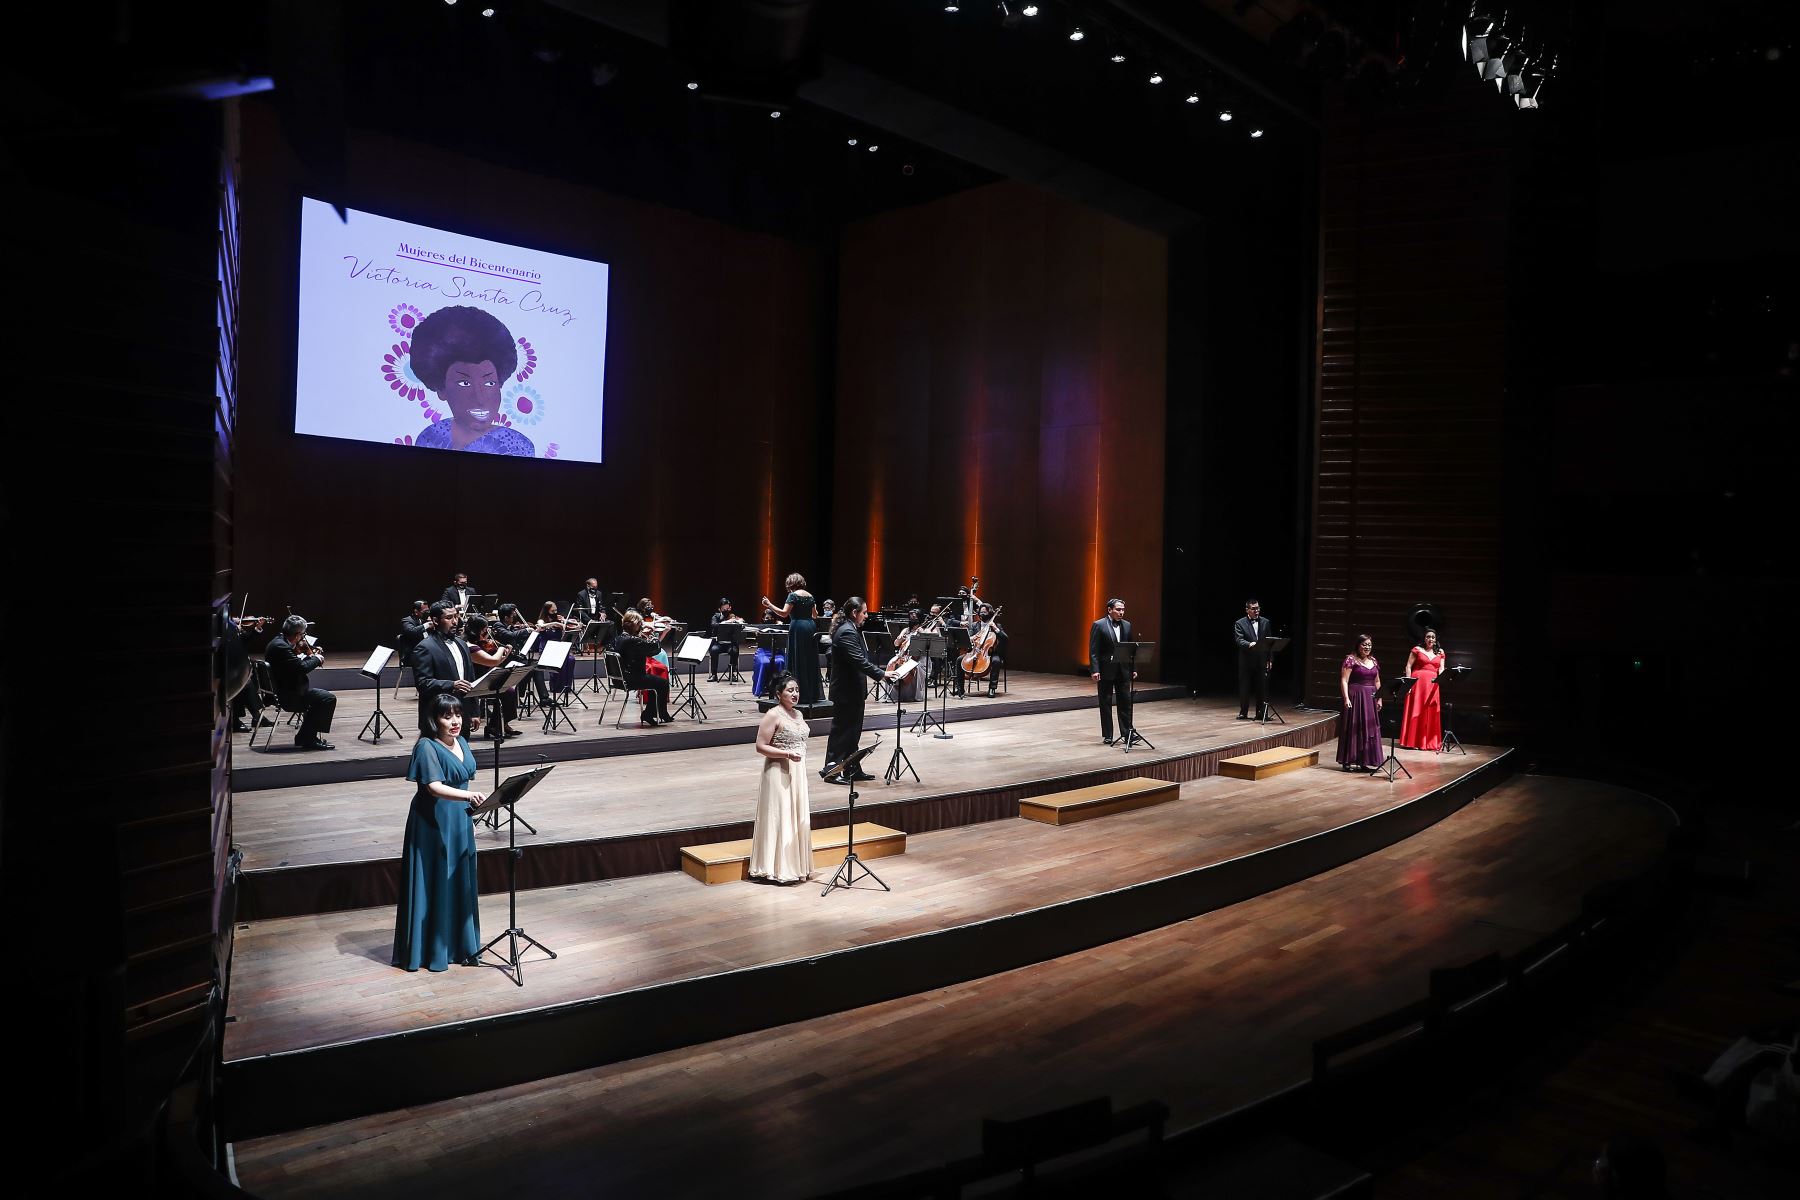 El Ministerio de Cultura organizó el concierto sinfónico Mujeres del Bicentenario en homenaje a Victoria Santa Cruz, a cargo de la Orquesta Sinfónica Nacional del Perú y el Coro Nacional del Perú en el Gran Teatro Nacional. Foto: ANDINA/Renato Pajuelo